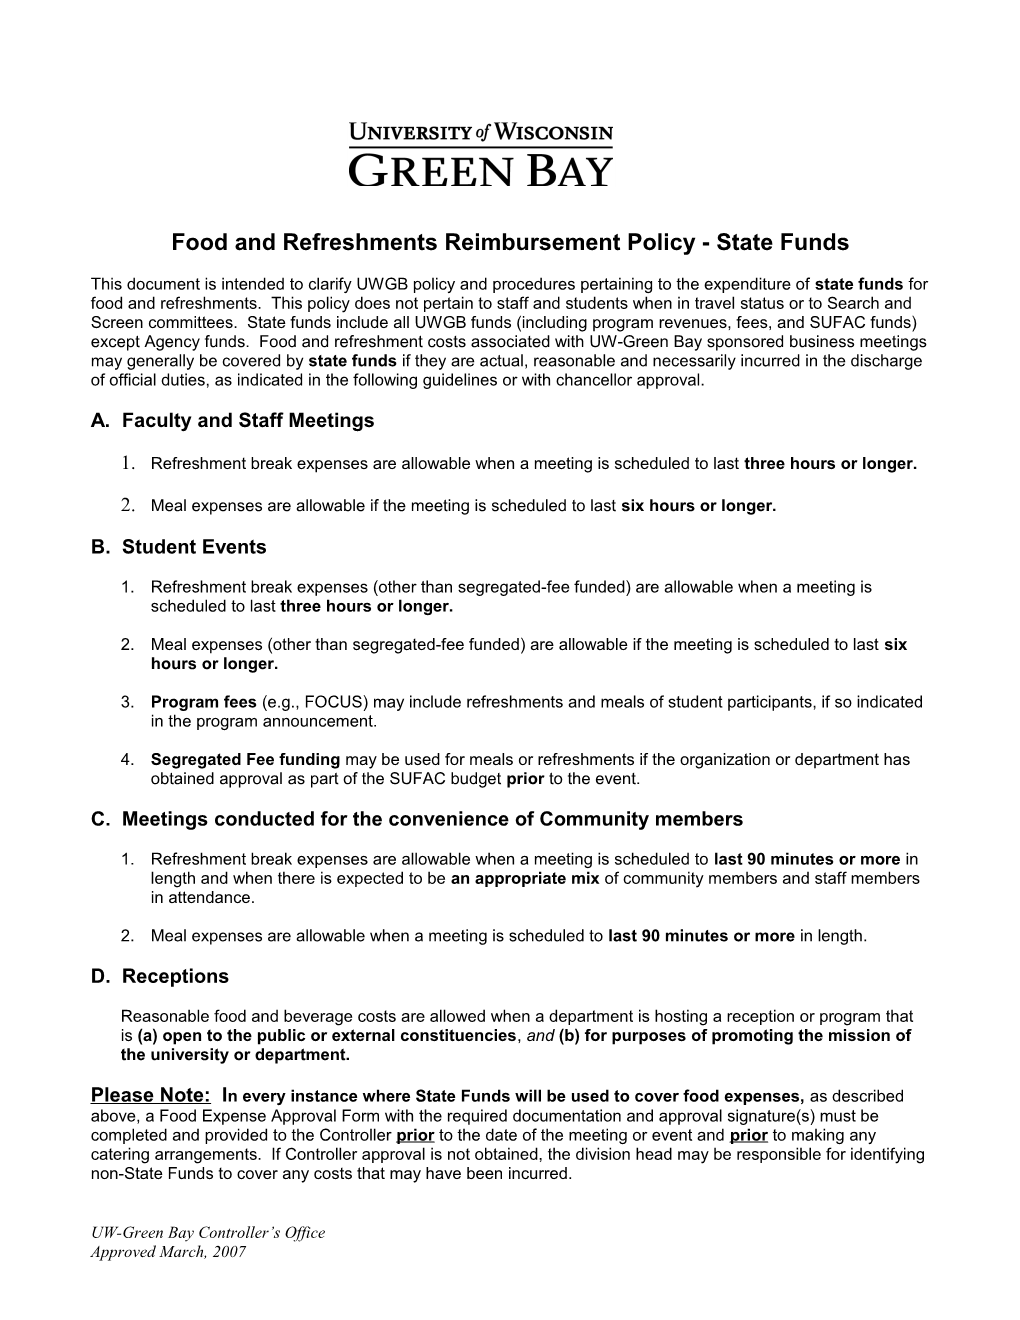 UW-Green Bay Food Reimbursement